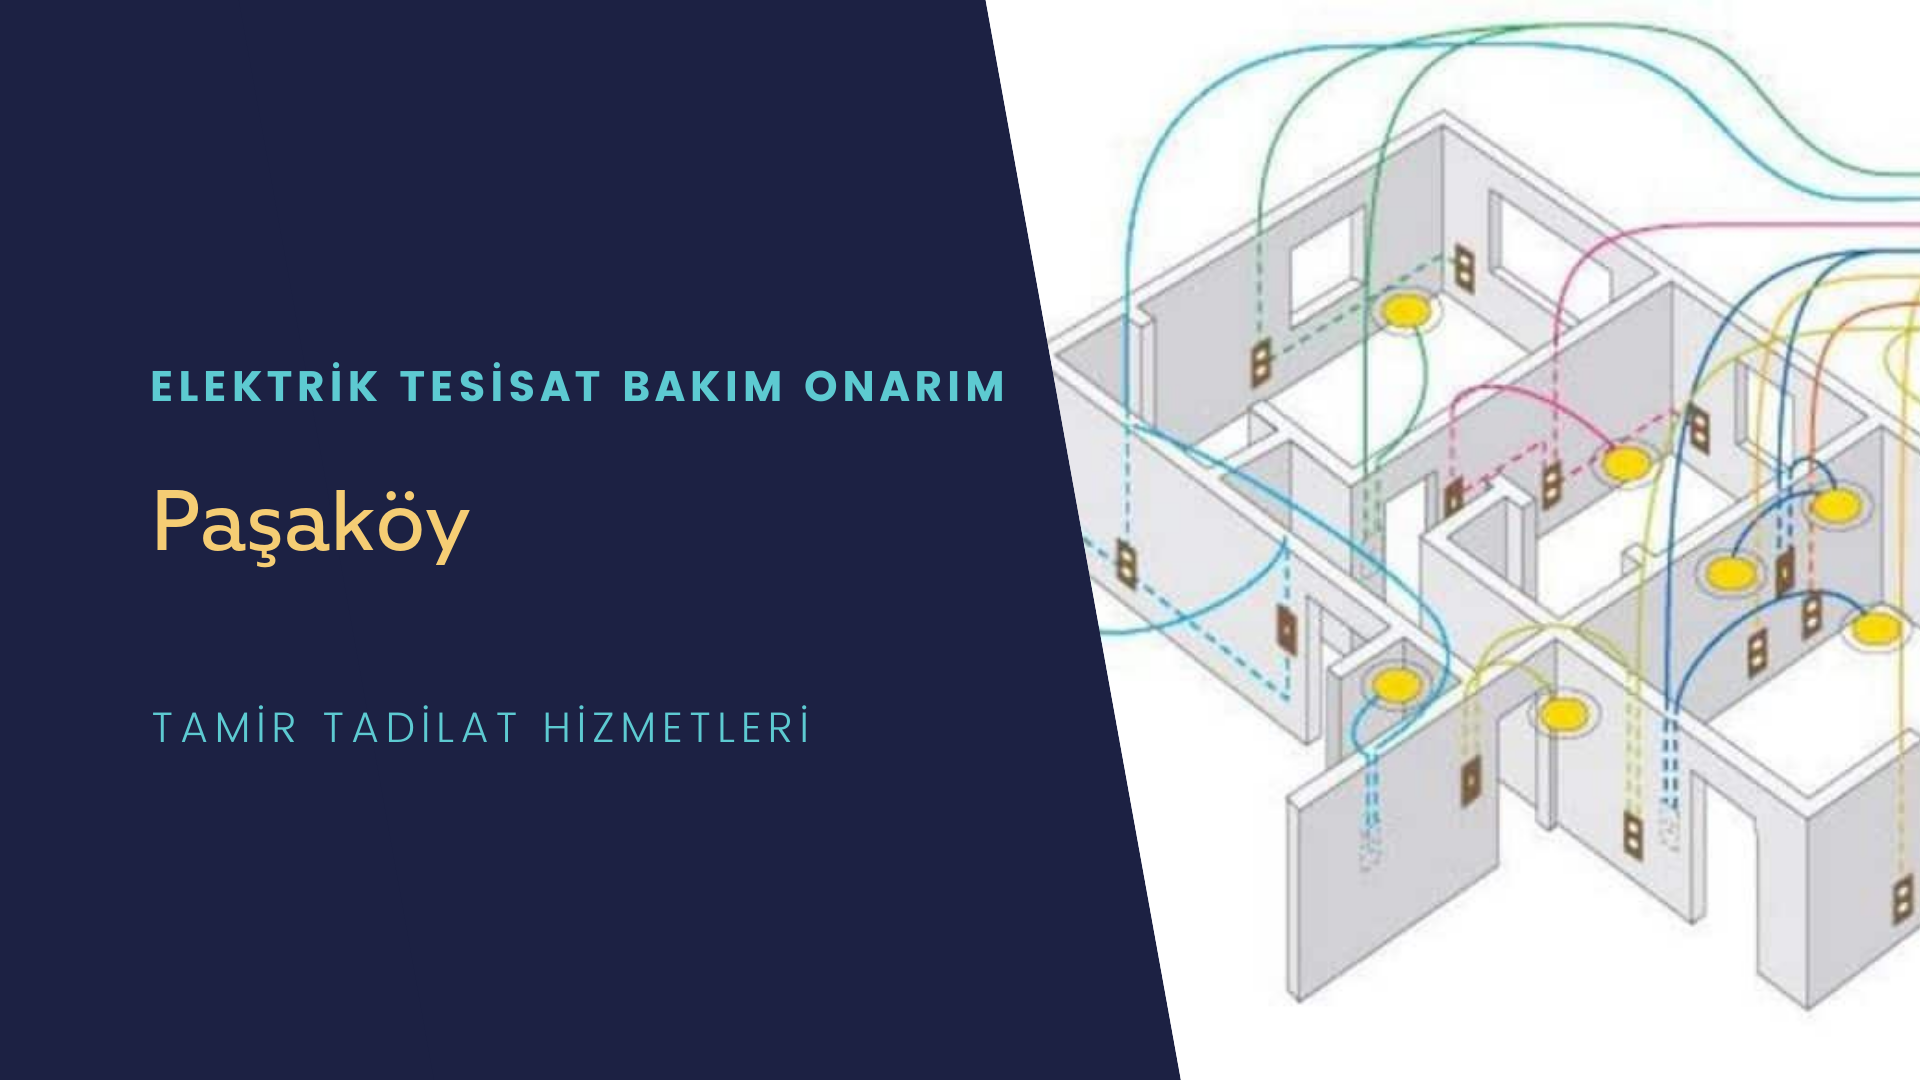 Paşaköy'de elektrik tesisatı ustalarımı arıyorsunuz doğru adrestenizi Paşaköy elektrik tesisatı ustalarımız 7/24 sizlere hizmet vermekten mutluluk duyar.